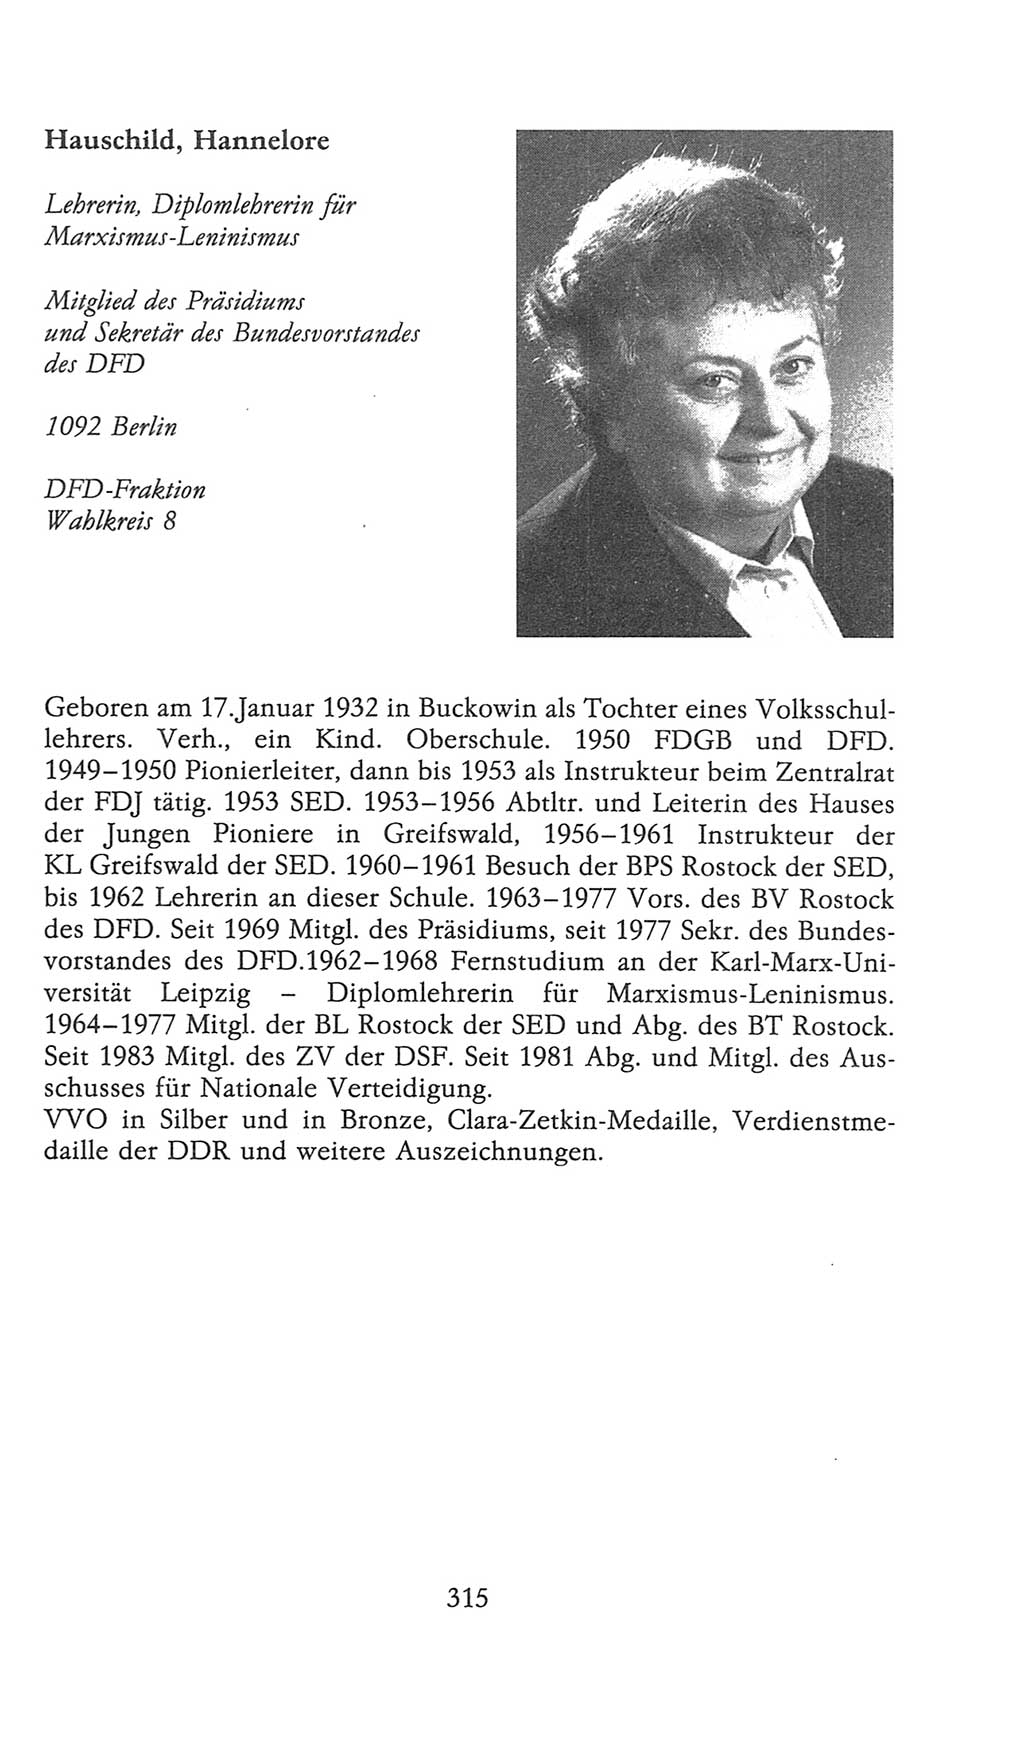 Volkskammer (VK) der Deutschen Demokratischen Republik (DDR), 9. Wahlperiode 1986-1990, Seite 315 (VK. DDR 9. WP. 1986-1990, S. 315)